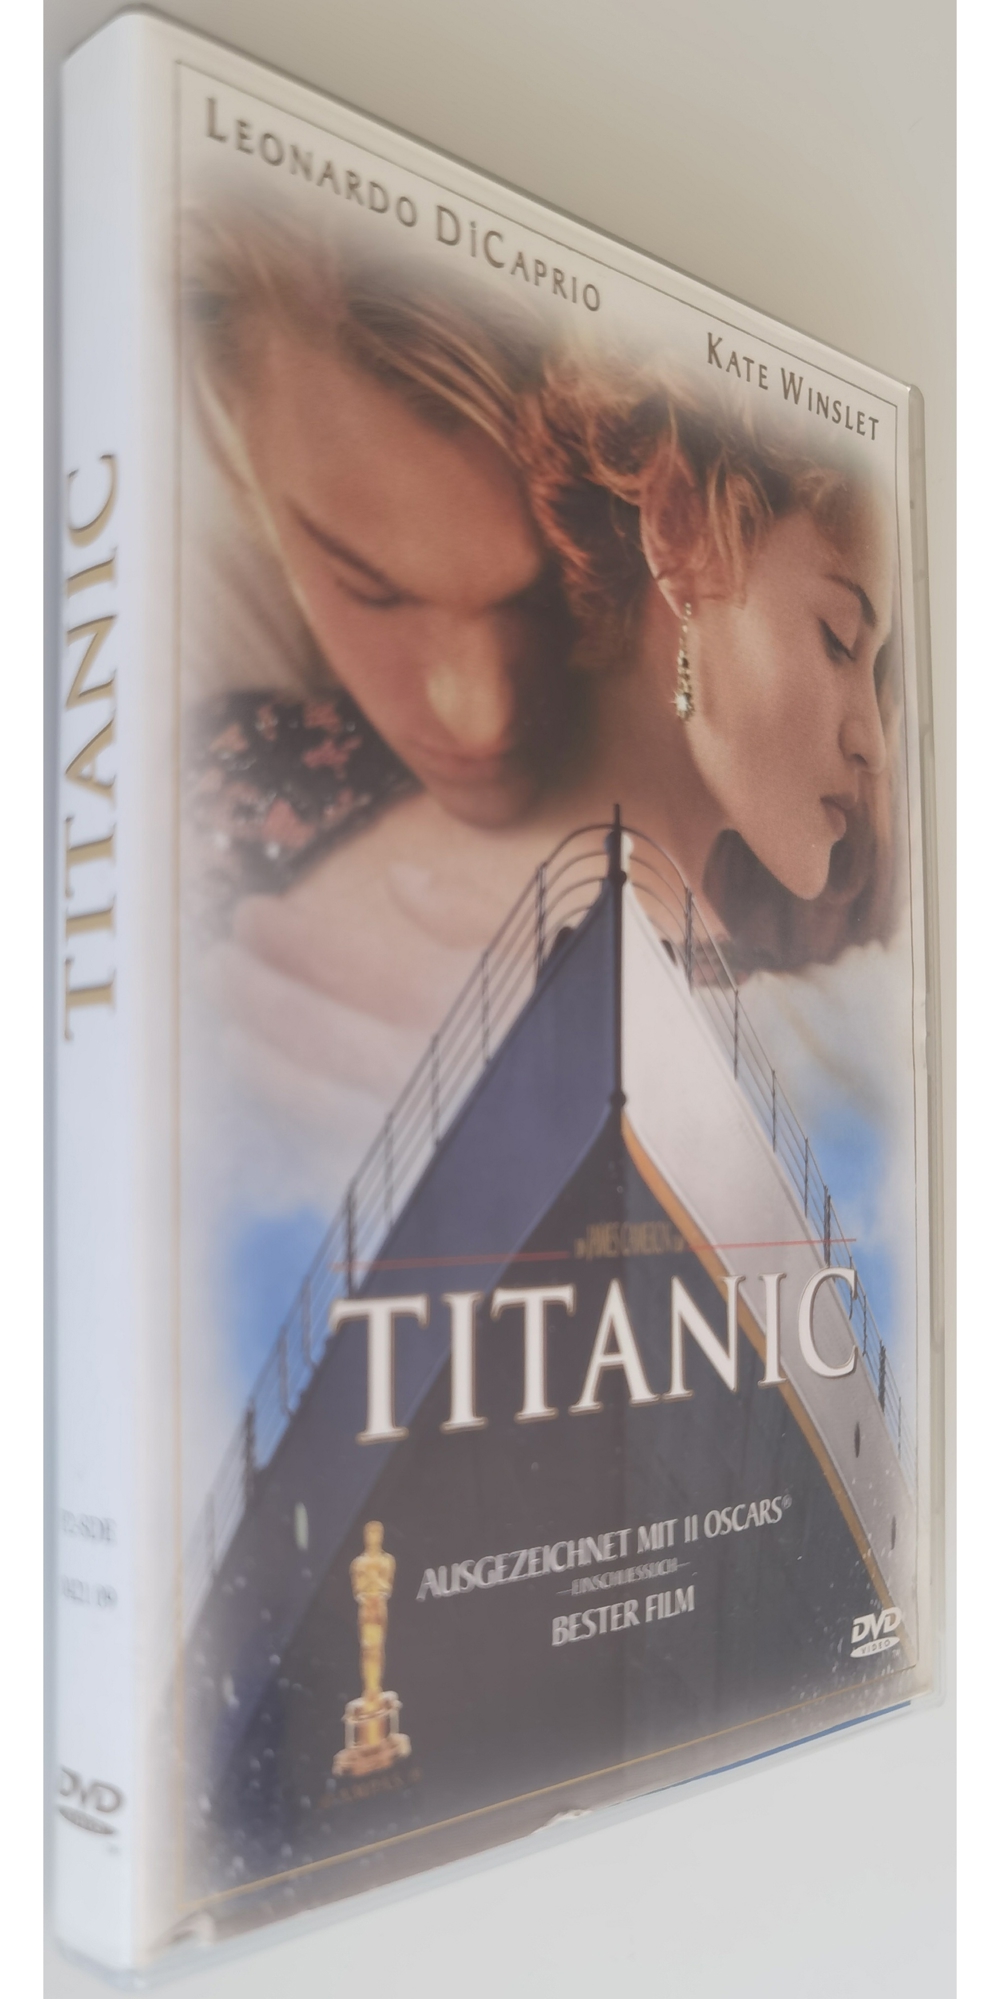 Titanic DVD Kate Winslet + Dicaprio großes Kino Bester Film 11 Oscars Cinema